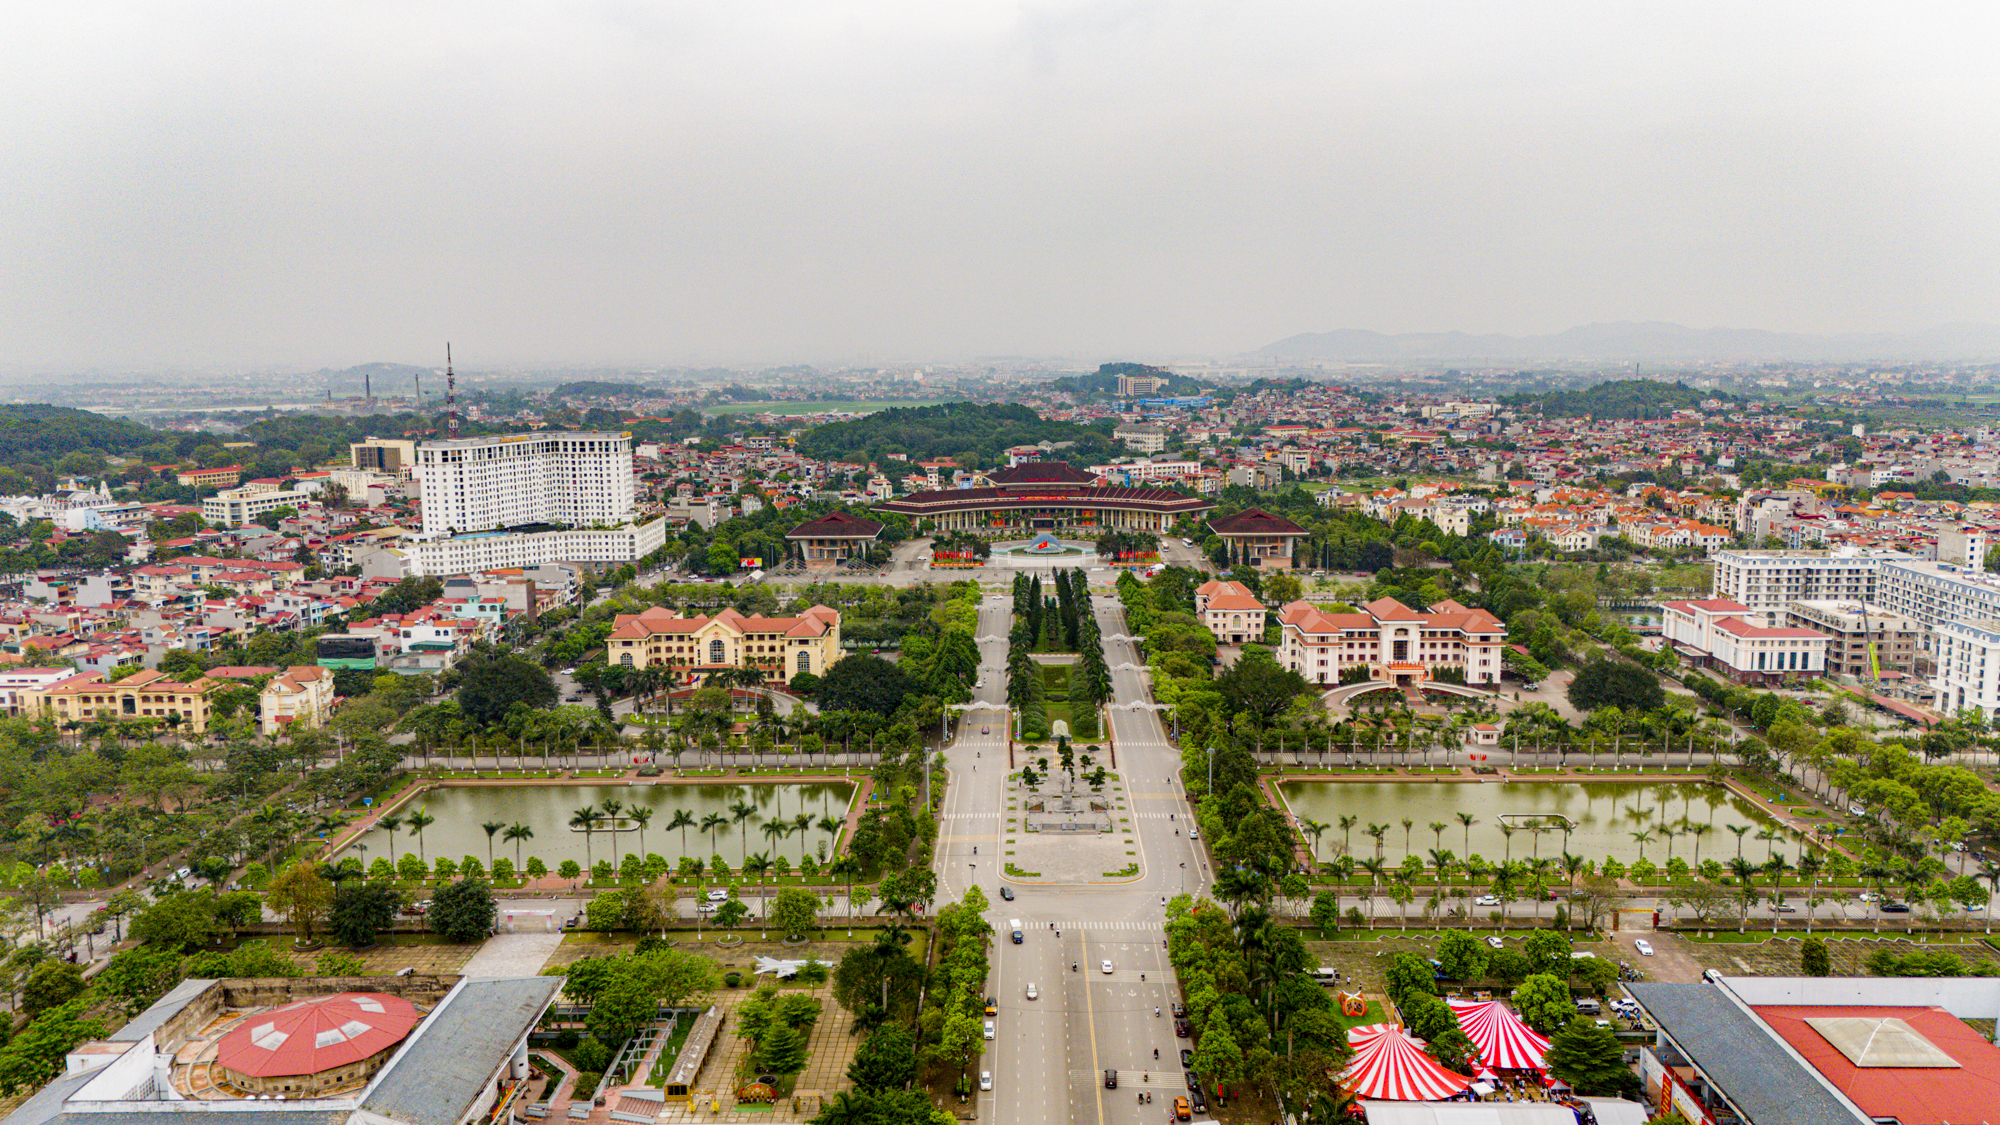 Khu vực trung tâm của trung tâm tỉnh sắp lên thành phố: Có khu hành chính độc đáo bậc nhất Việt Nam; Vingroup, Vietcombank phô diễn vị thế- Ảnh 8.